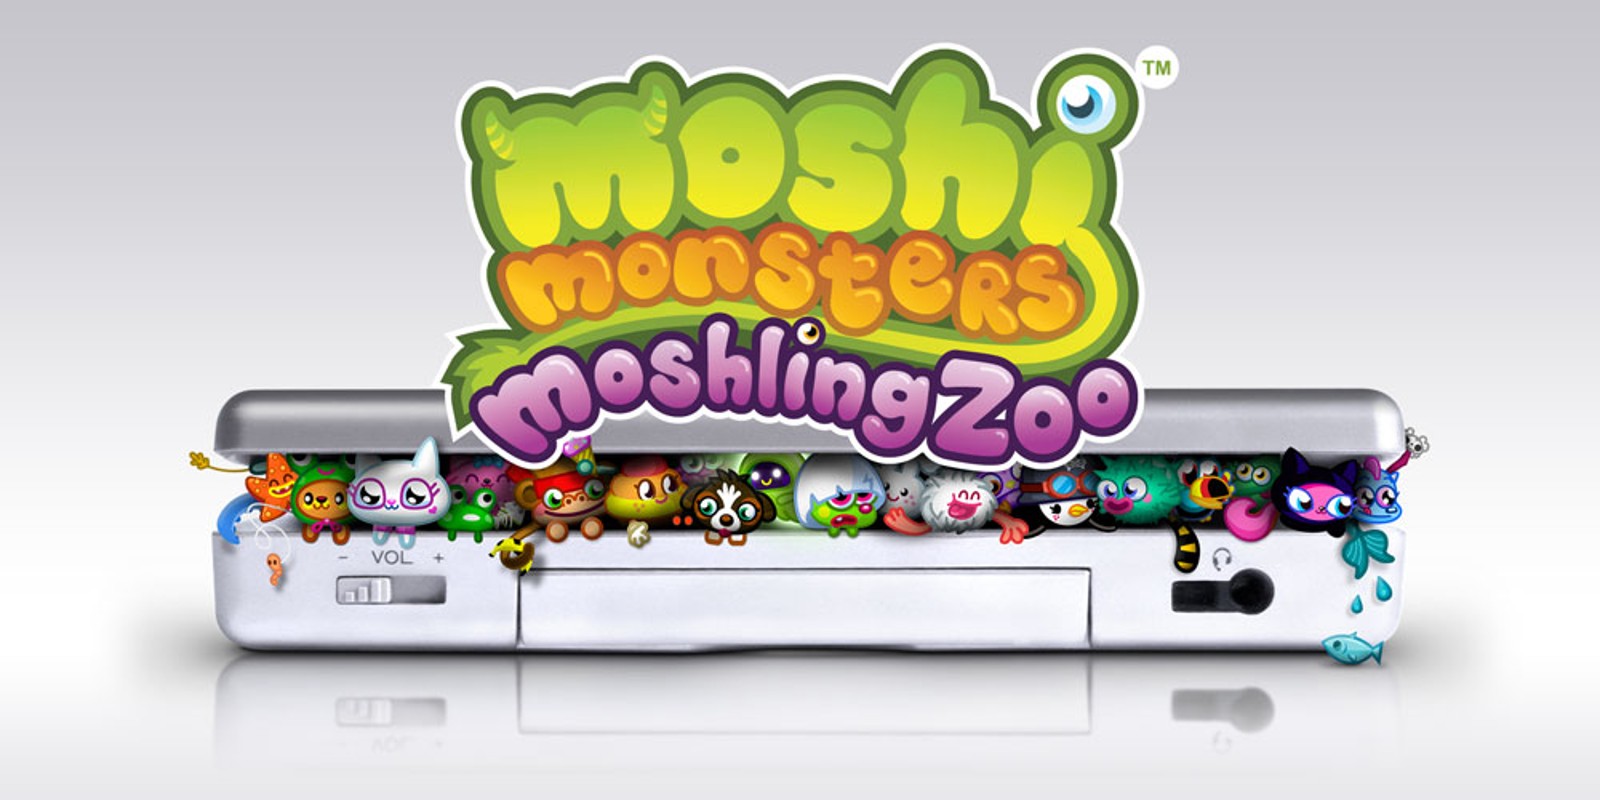 Moshi Monsters: Moshling Zoo